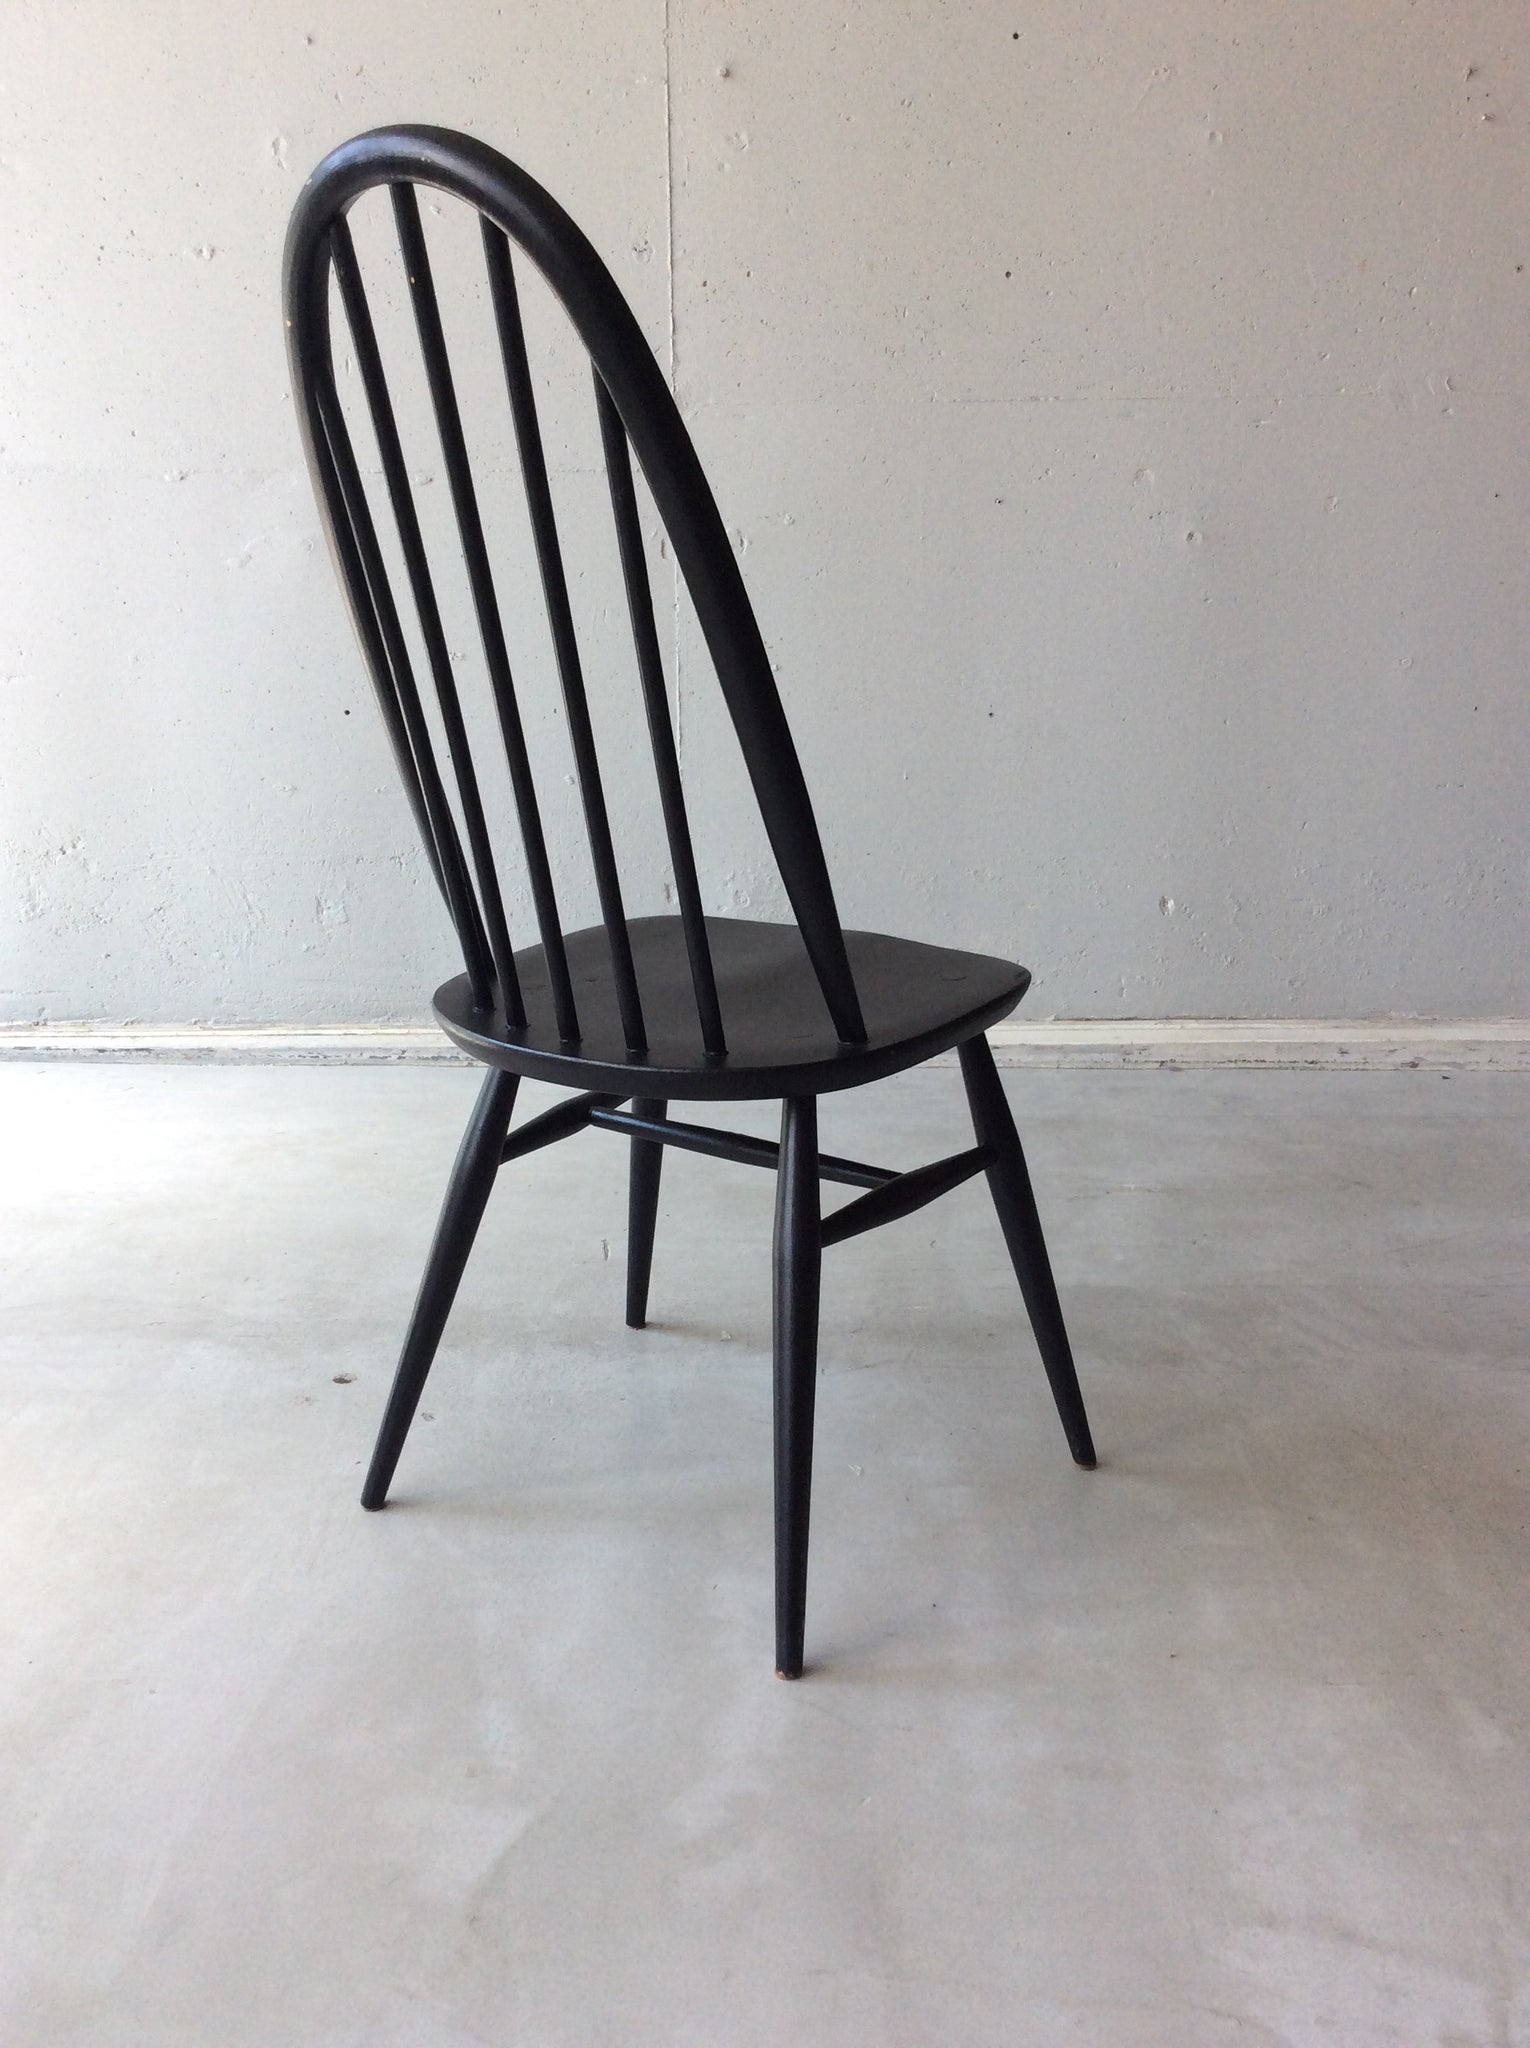 アーコール クエーカー ウィンザー チェア / ercol quaker windsor chair '365' #0089